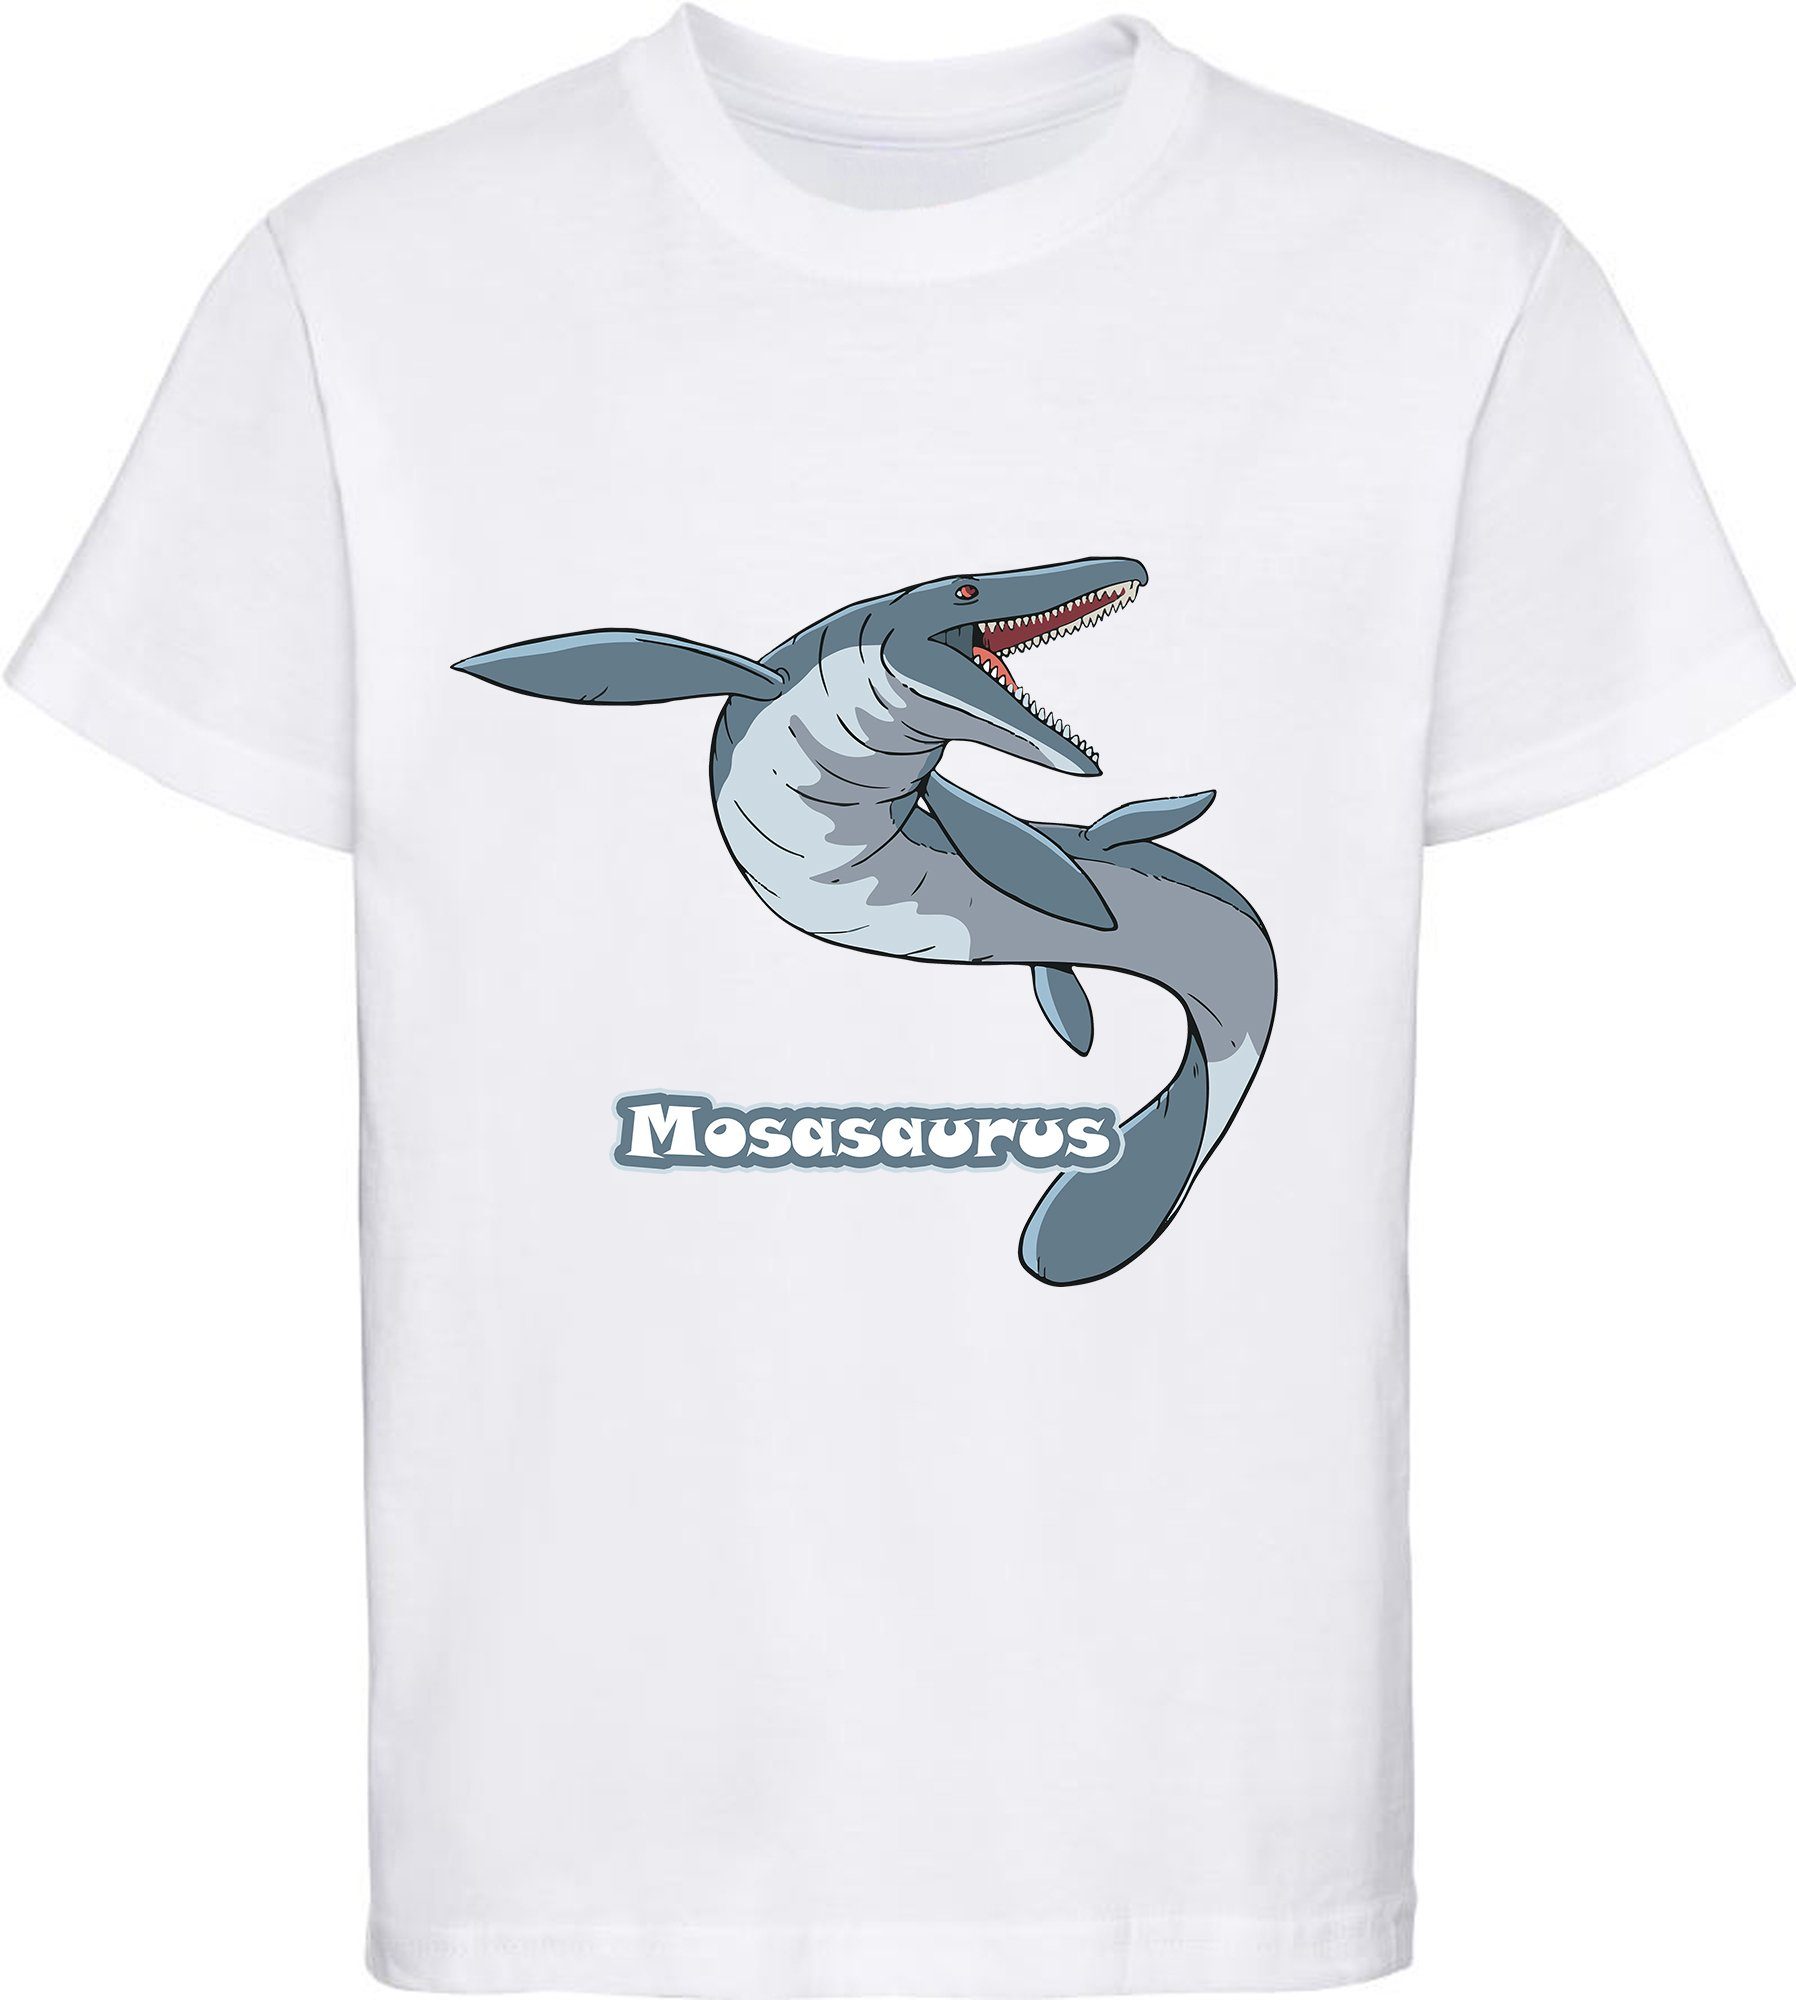 MyDesign24 T-Shirt bedrucktes Kinder T-Shirt mit Mosasaurus 100% Baumwolle mit Dino Aufdruck, weiss i51